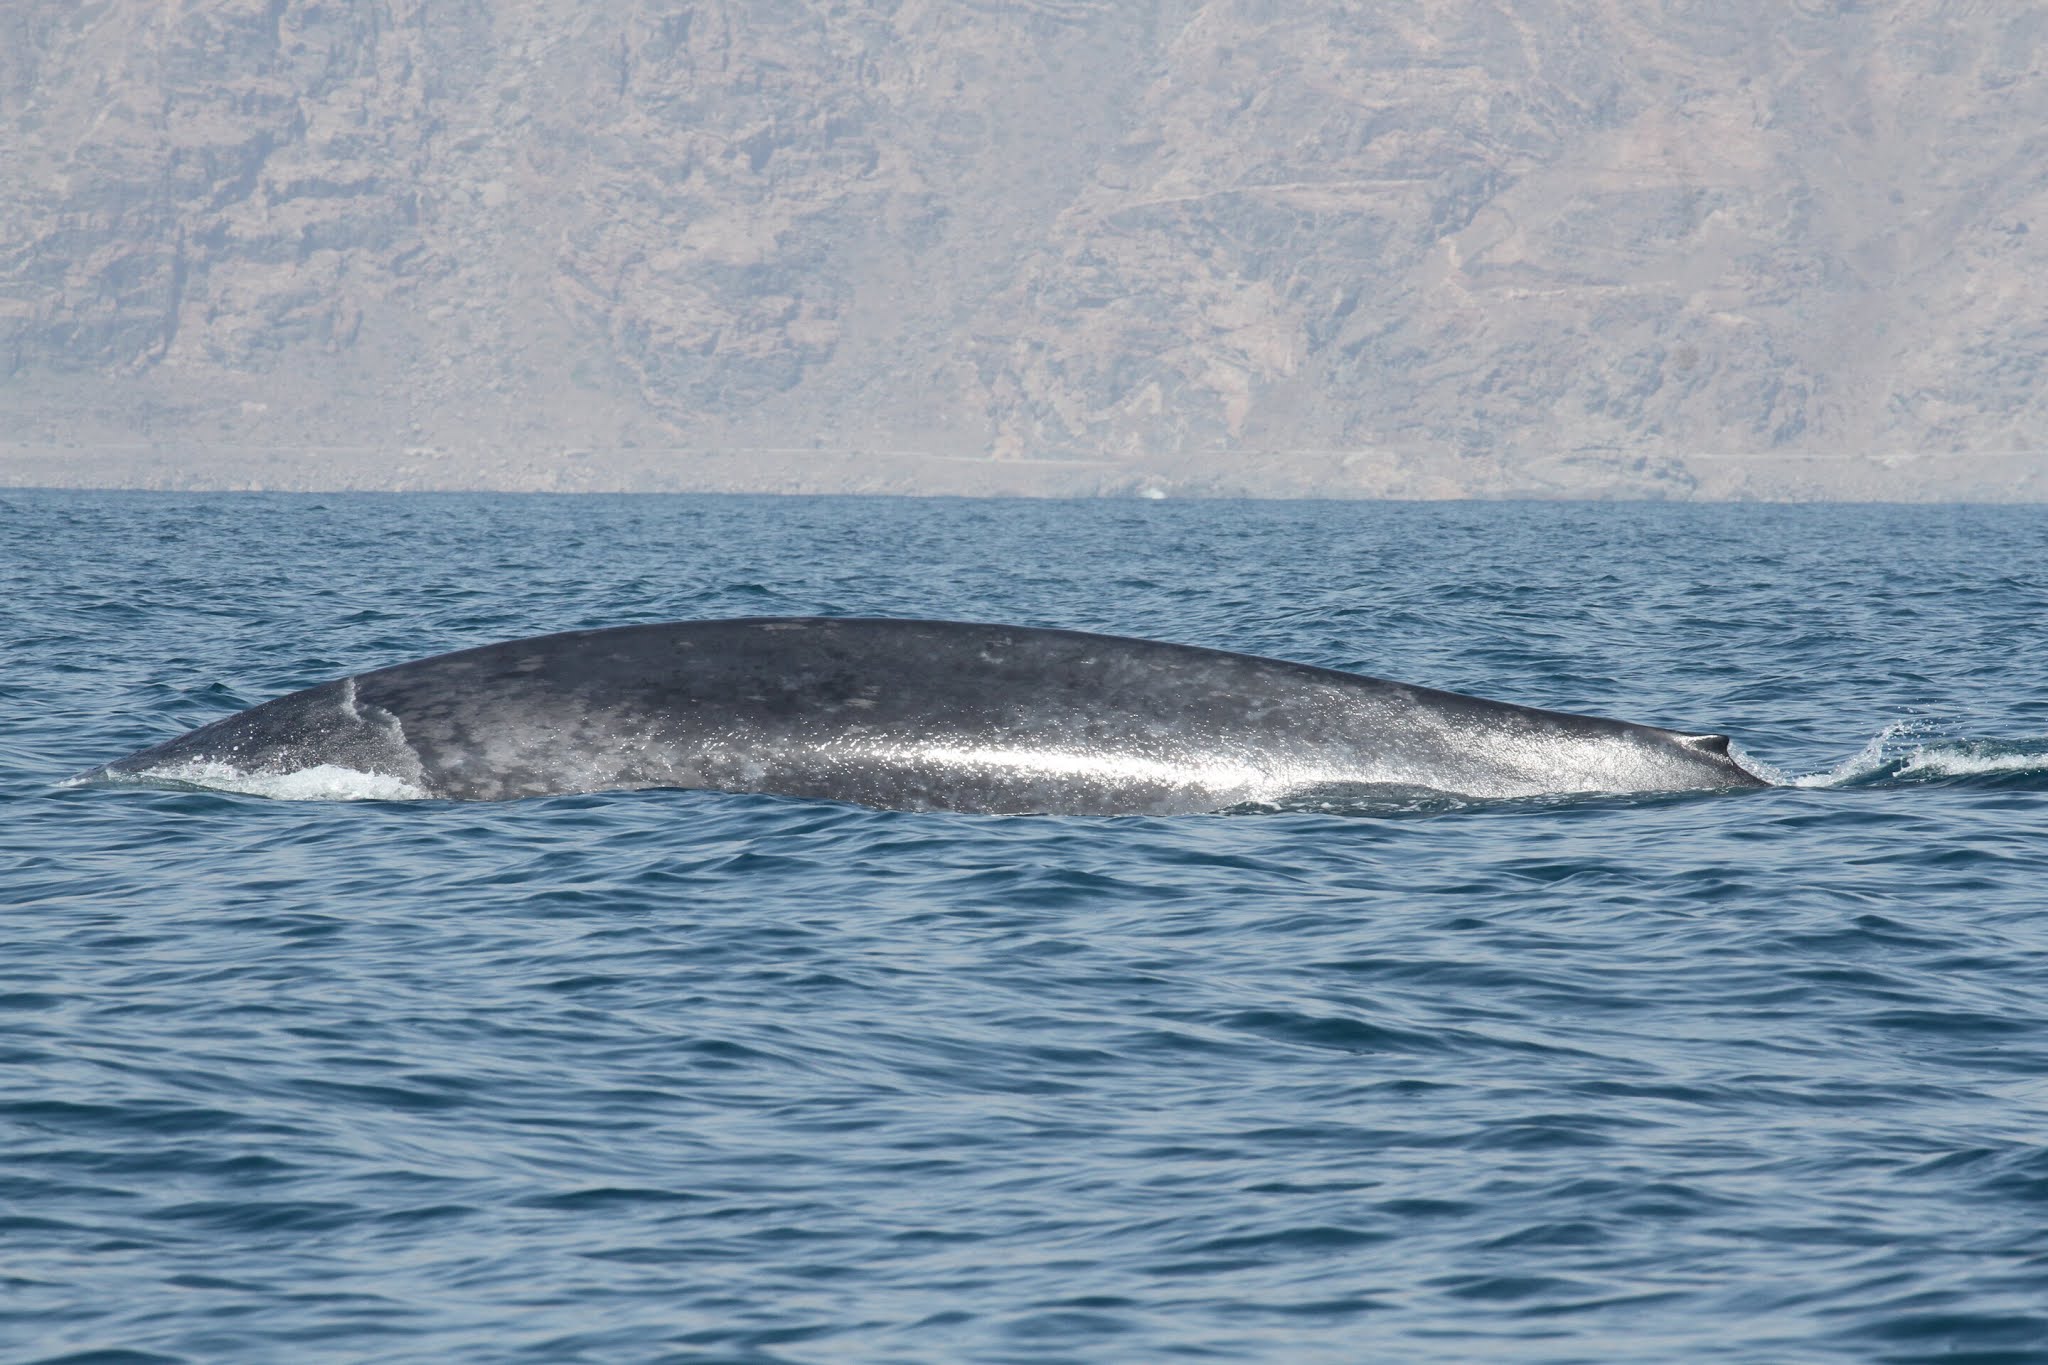 Résultat de recherche d'images pour "Cette nouvelle espèce de baleine décrite est déjà menacée d'extinction"